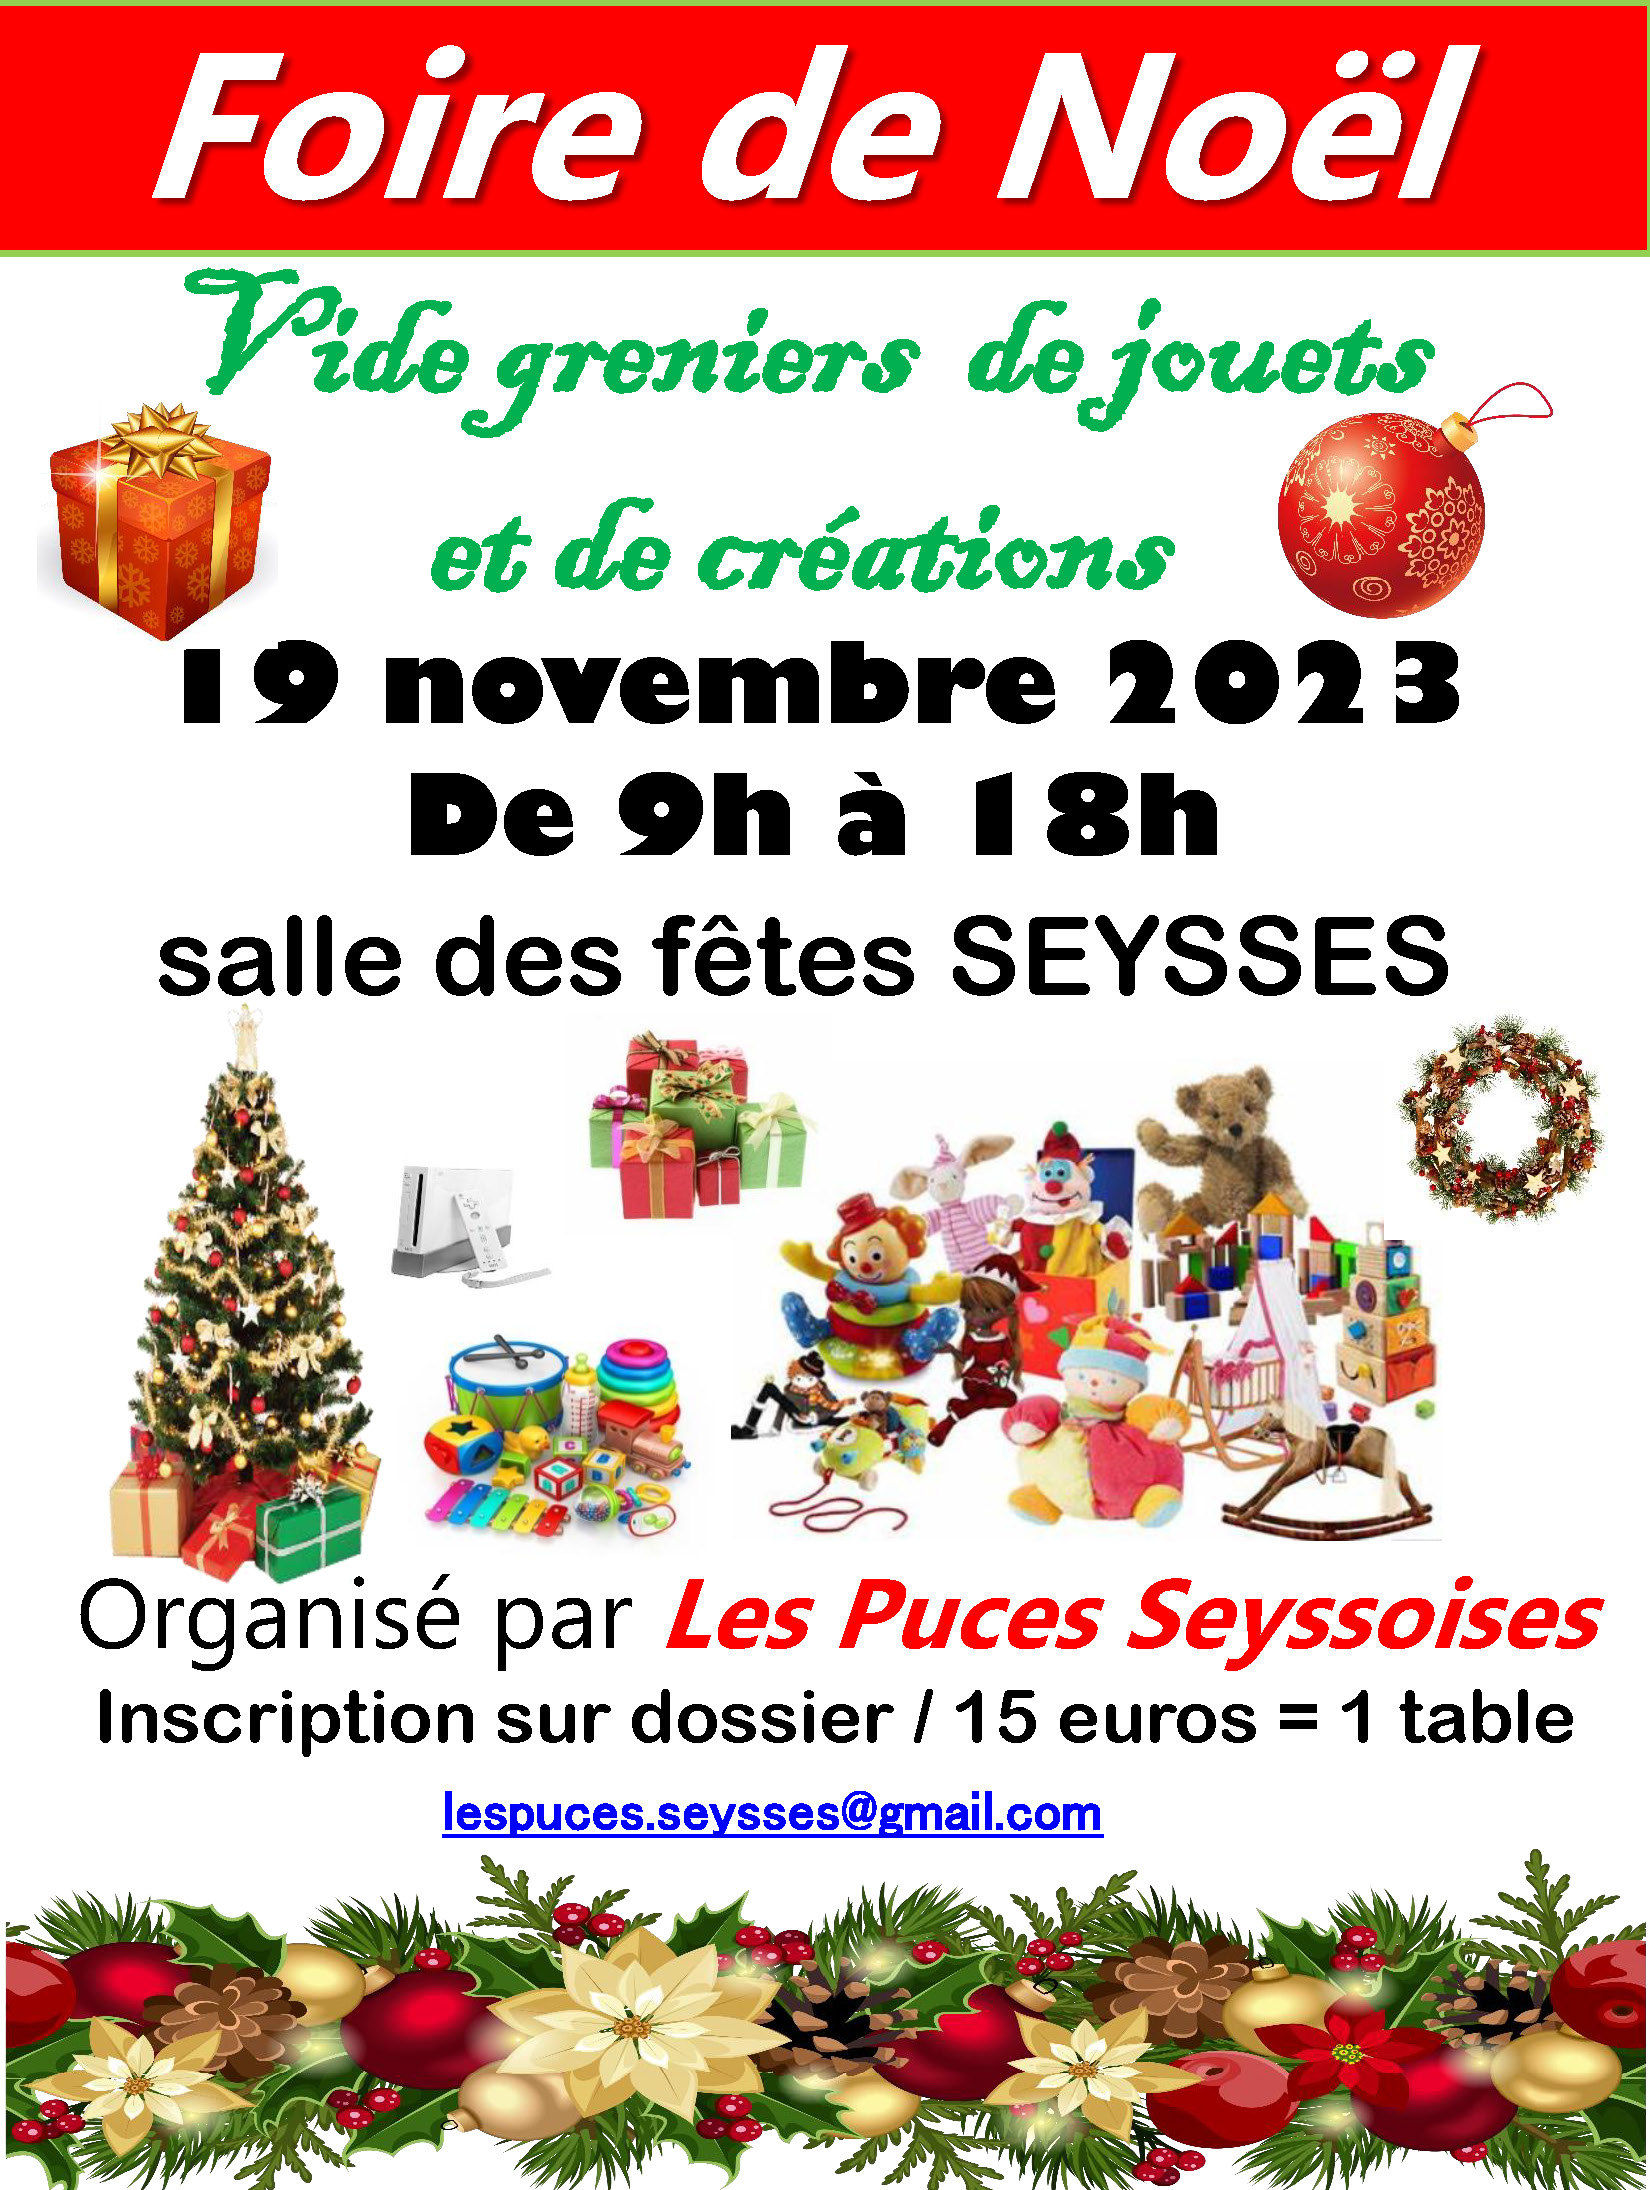 ‌Affiche transmise par les Puces Seyssoises pour l'évènement Foire de Noël 2023